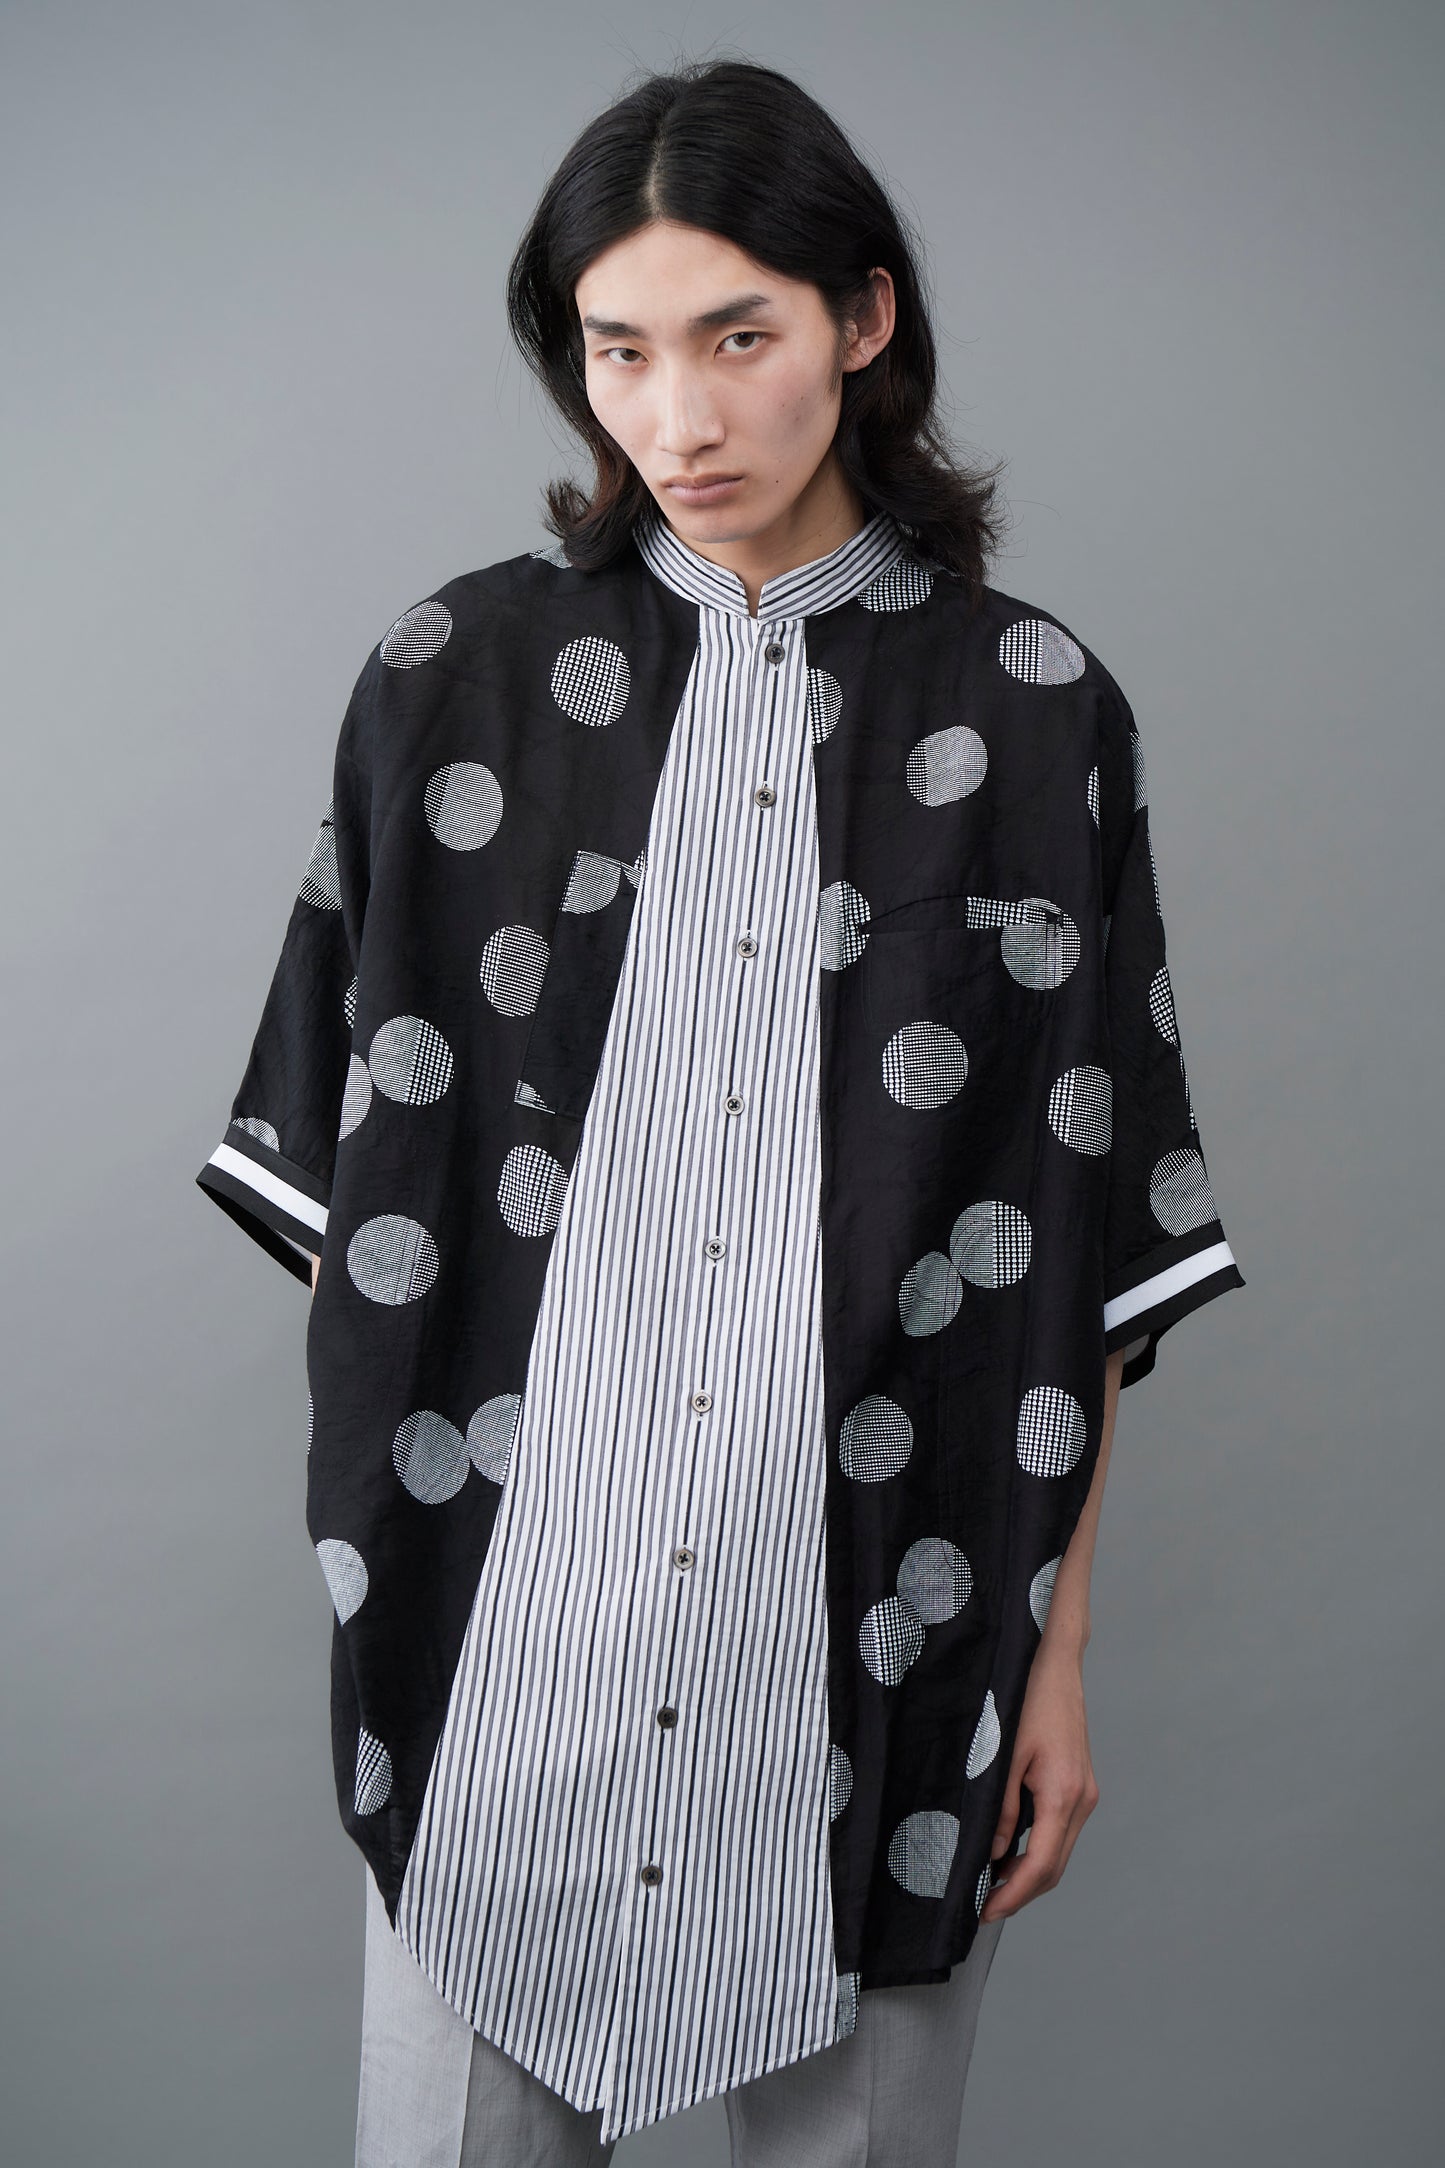 Japanese woven dot Short-Sleeved Shirt